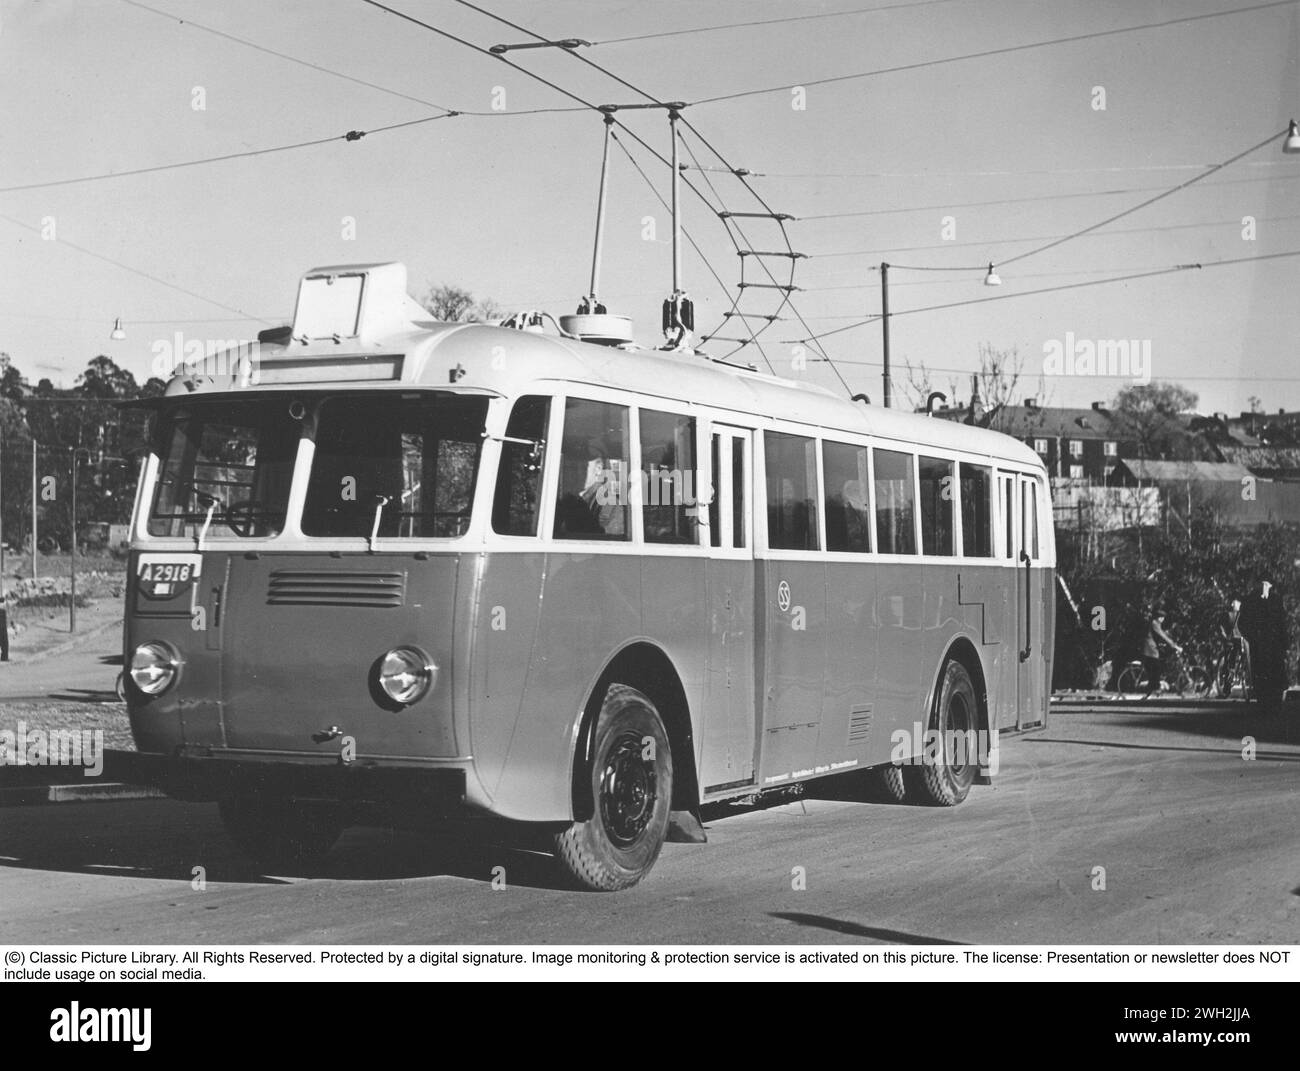 Elektrobus in den 1940er Jahren Ein Trolley-Bus war ein Bus, der mit Strom aus einer Oberleitung über dem Bus betrieben wurde. Immer wenn der Bus zu weit von seinem Pfad unter der Stromversorgung abwich, ging der Kontakt verloren und der Fahrer musste die Anschlüsse wieder anschließen, um weiter fahren zu können. Der Bus trägt die Bezeichnung SS, was ab Stockholms Spårvägar Sweden 1940 bedeutet Stockfoto